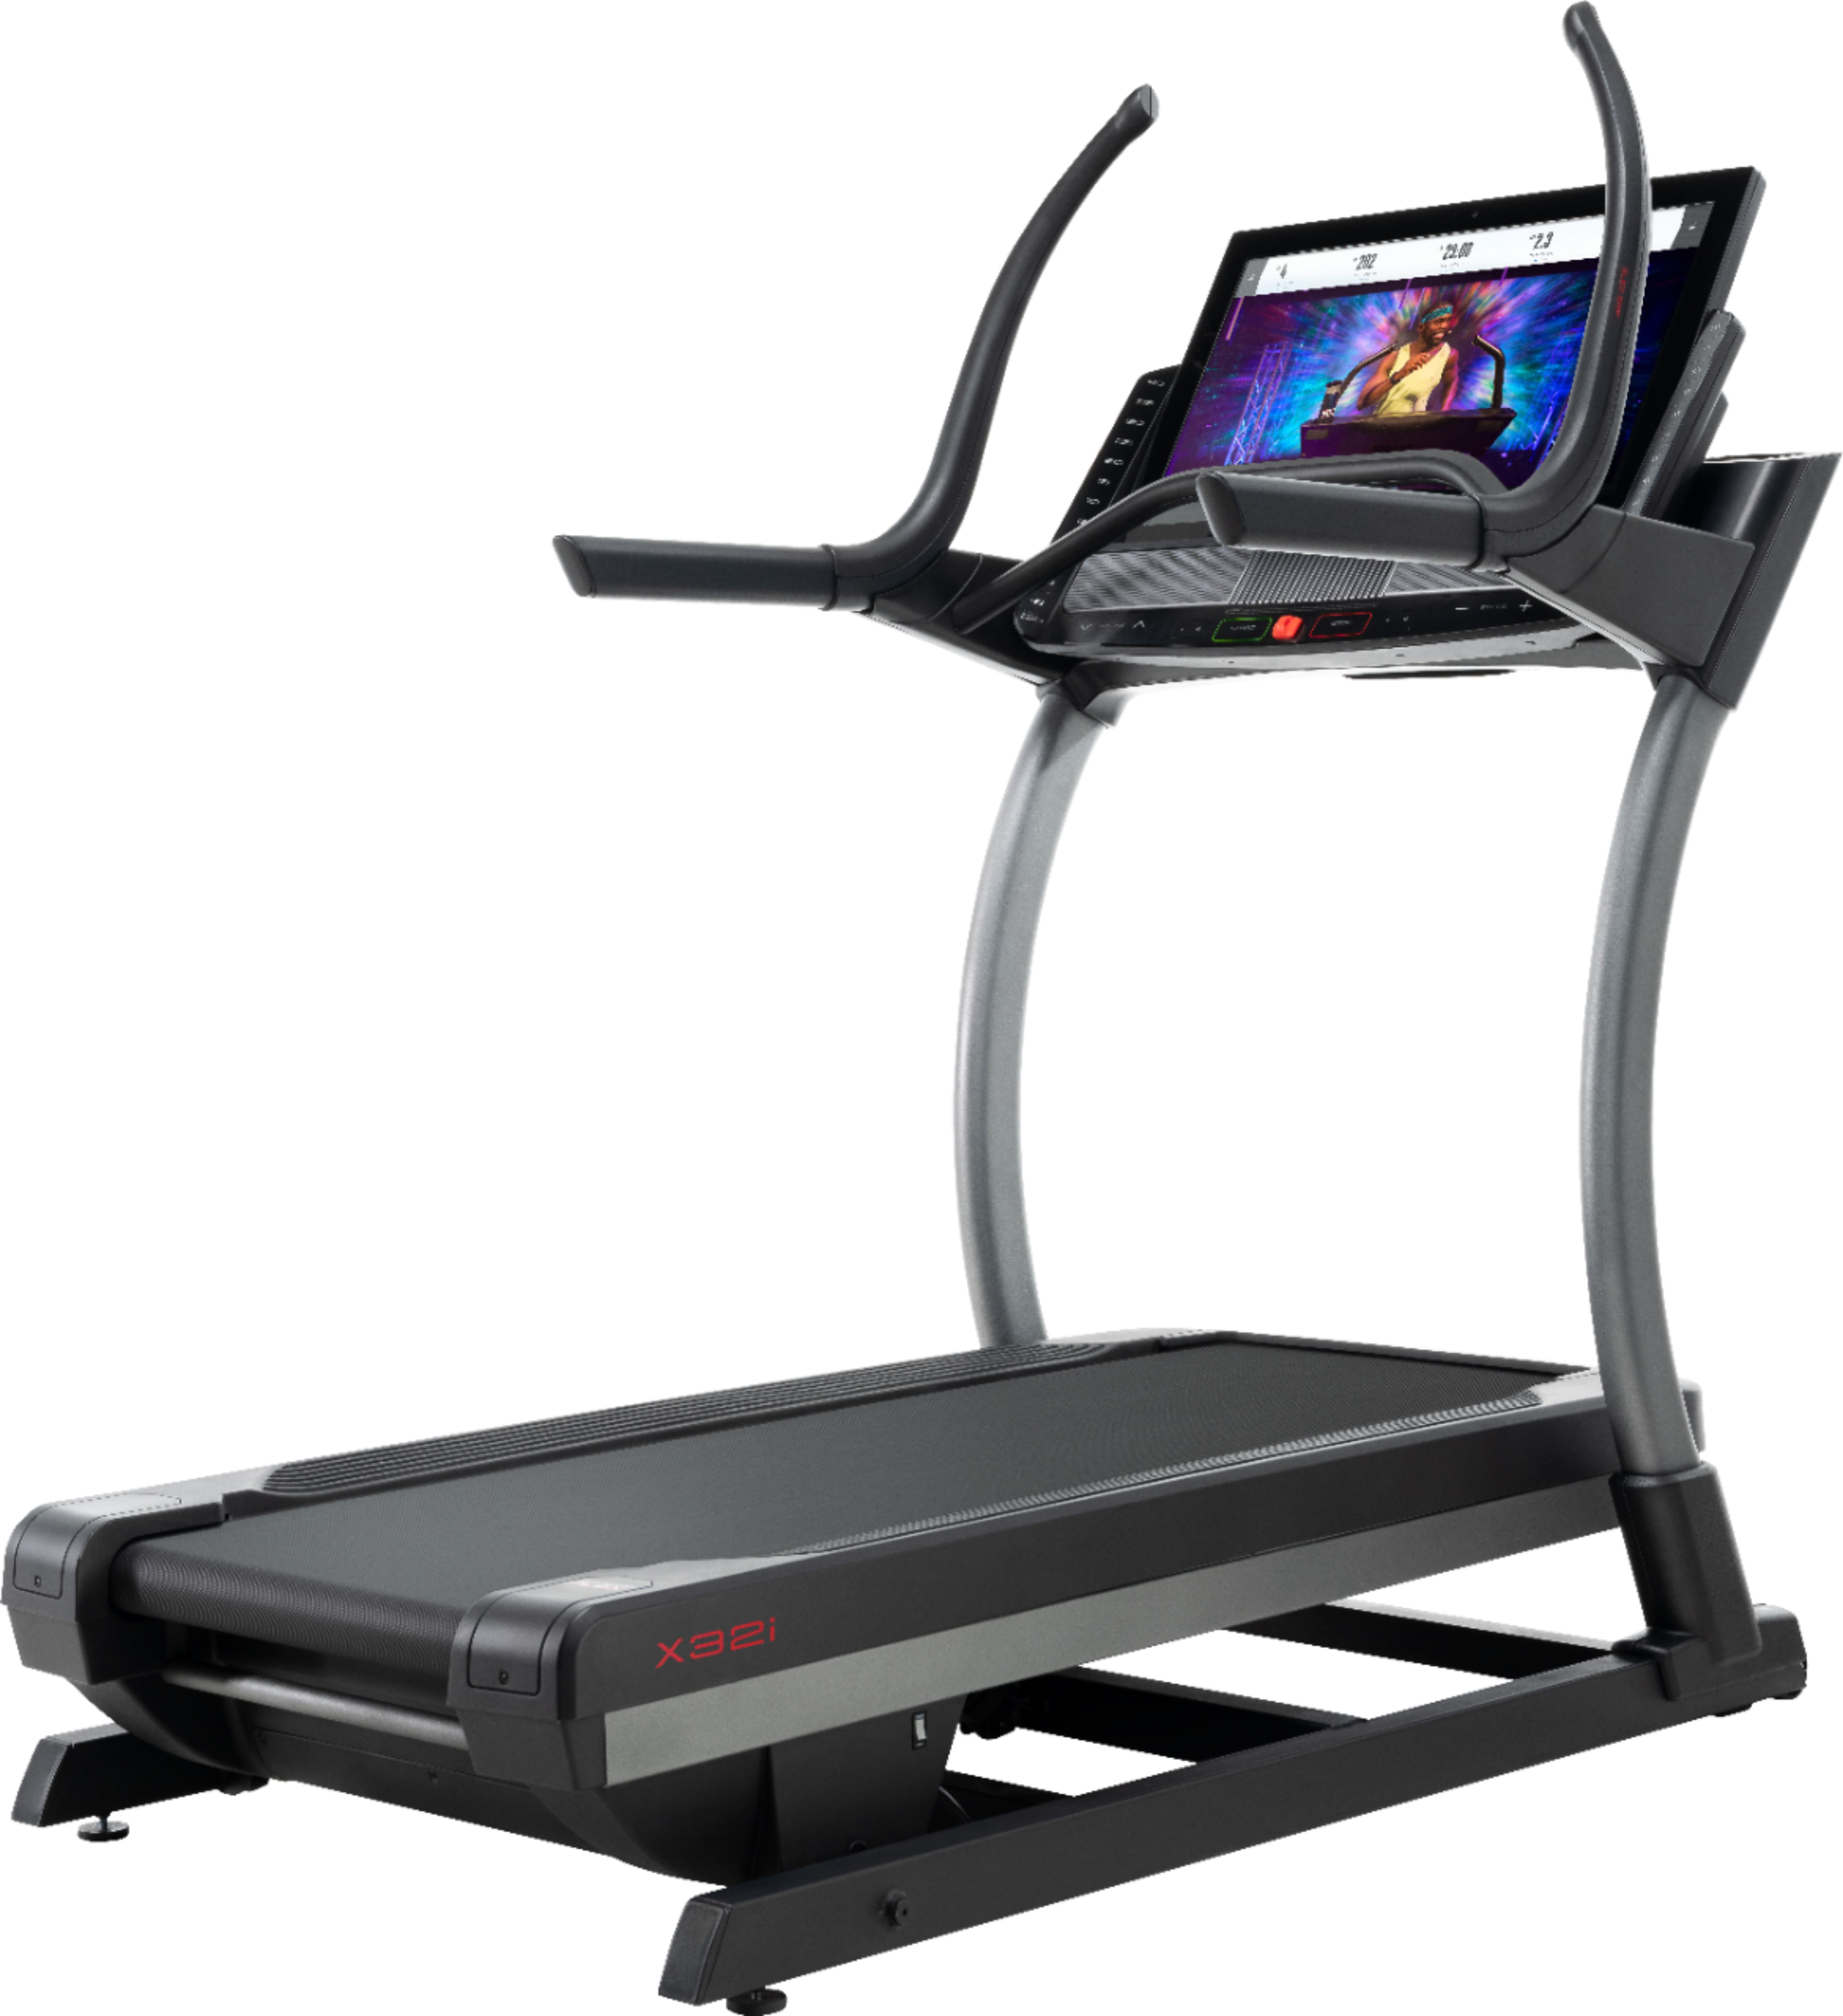 nordic treadmill